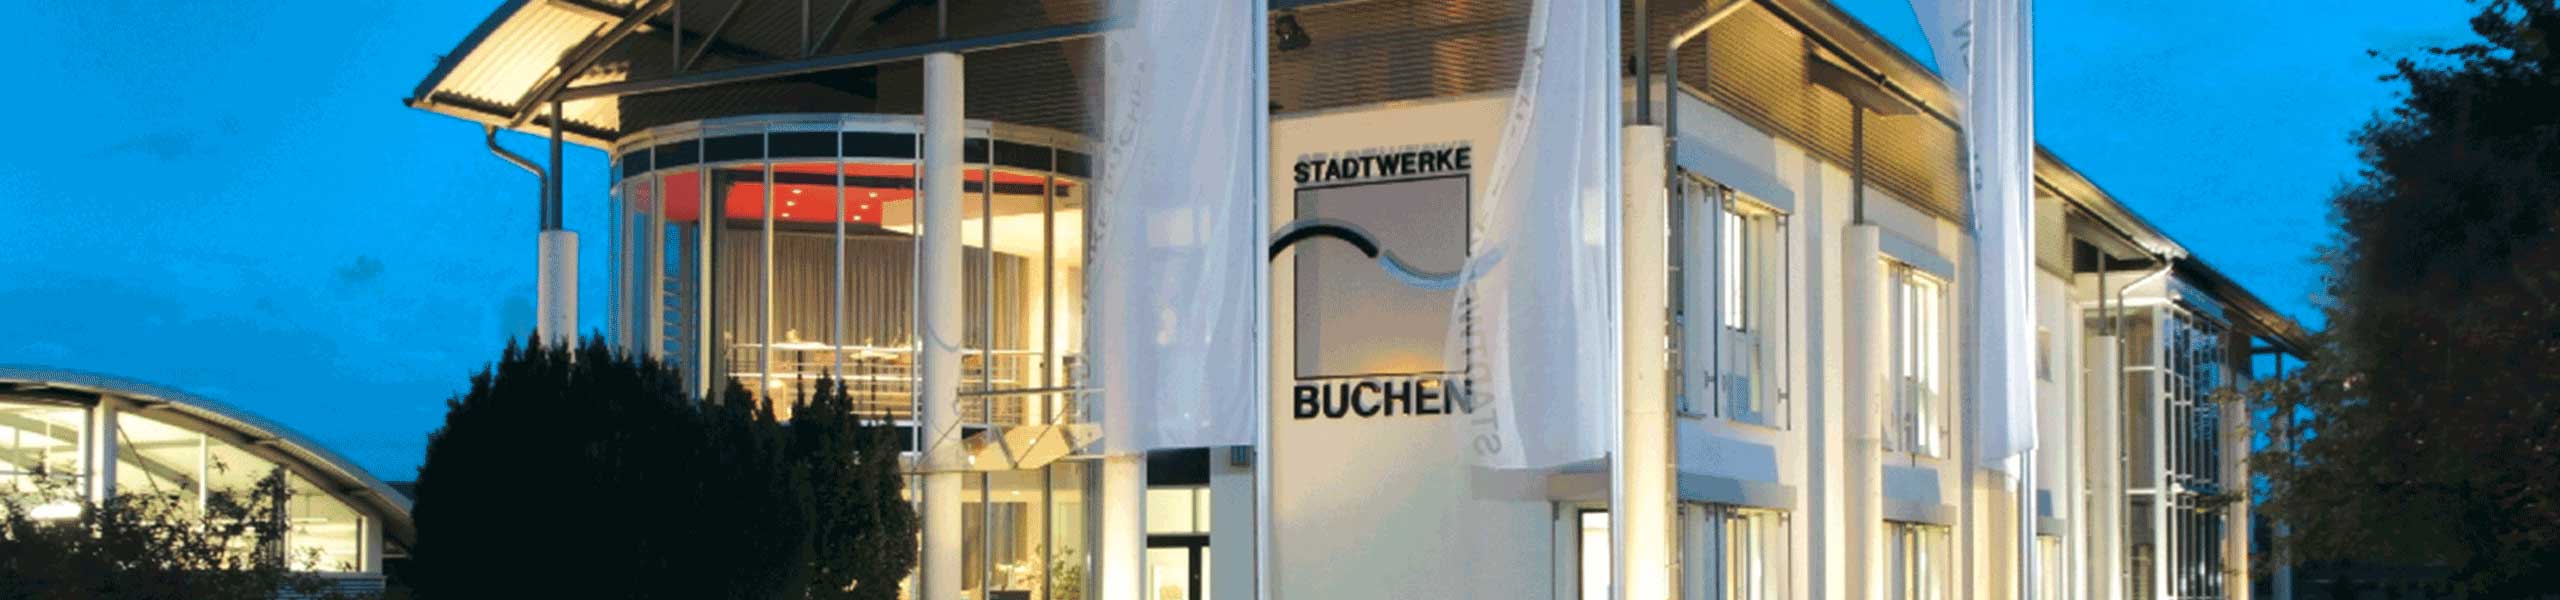 Stadtwerke Buchen GmbH & Co KG - Ihr Versorger vor Ort - Wiederverkäufernachweis